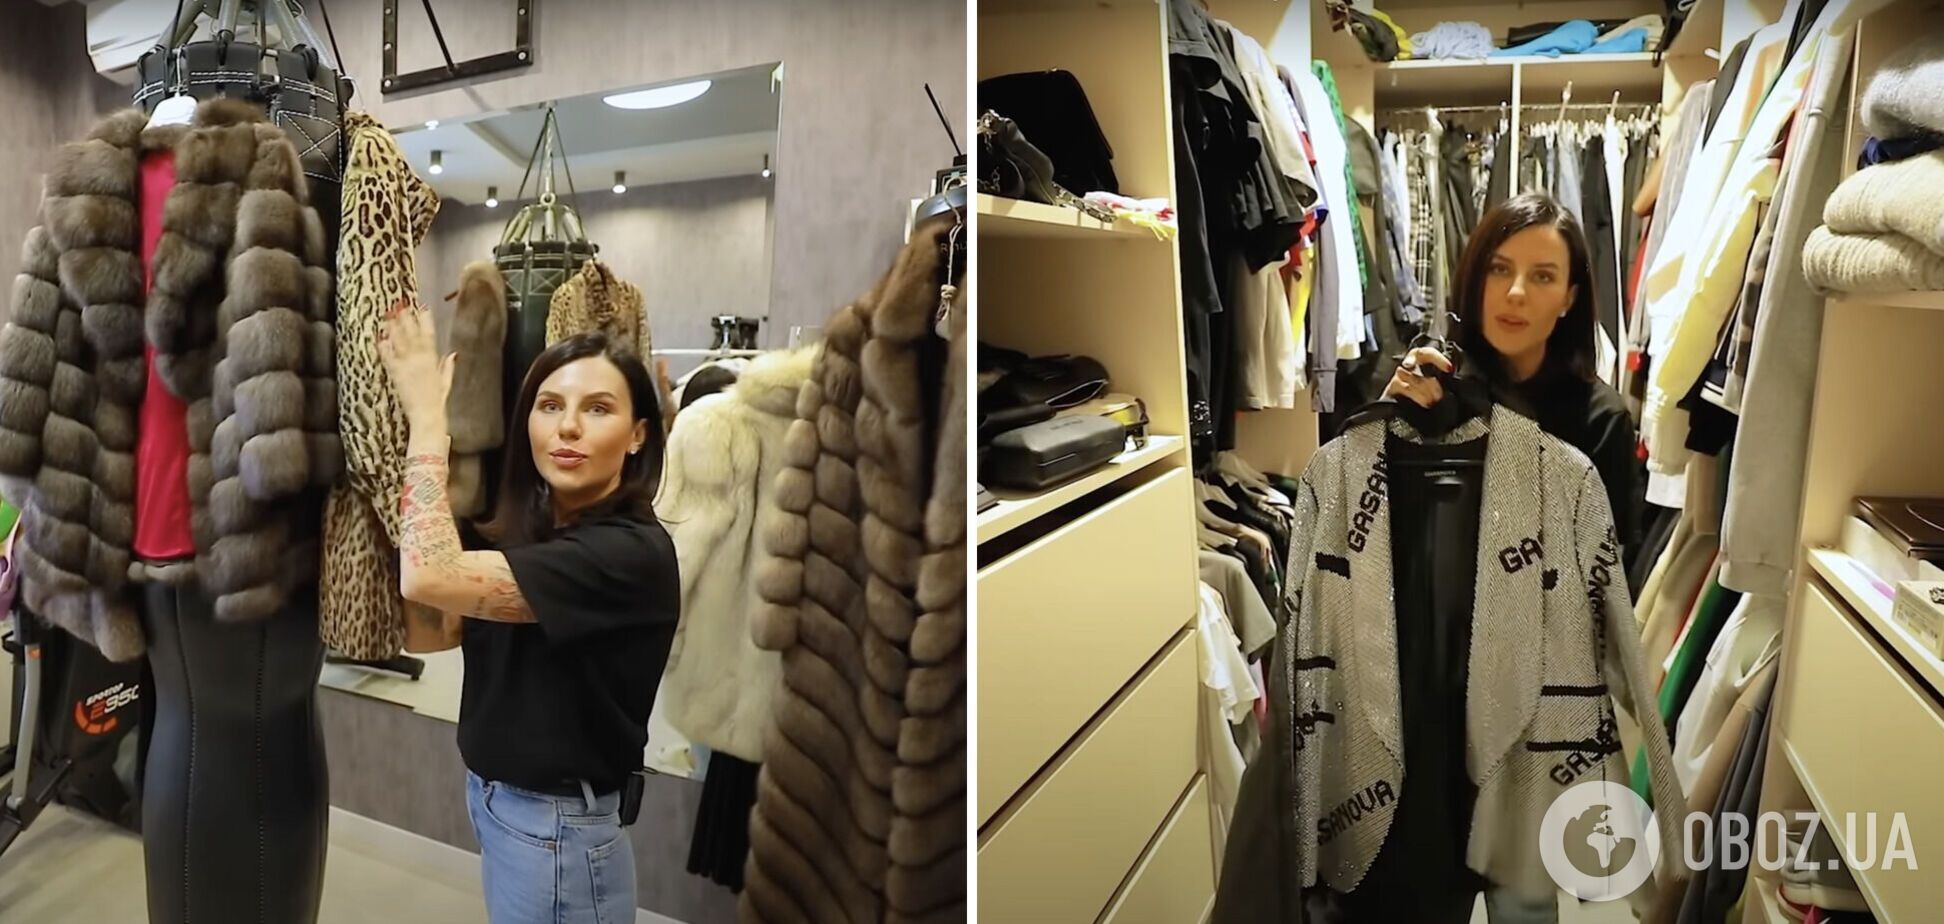 Блогерка Алхім, яка принижувала українців, показала свою колекцію шуб і найдорожчу річ гардеробу – піджак за 5 тисяч євро